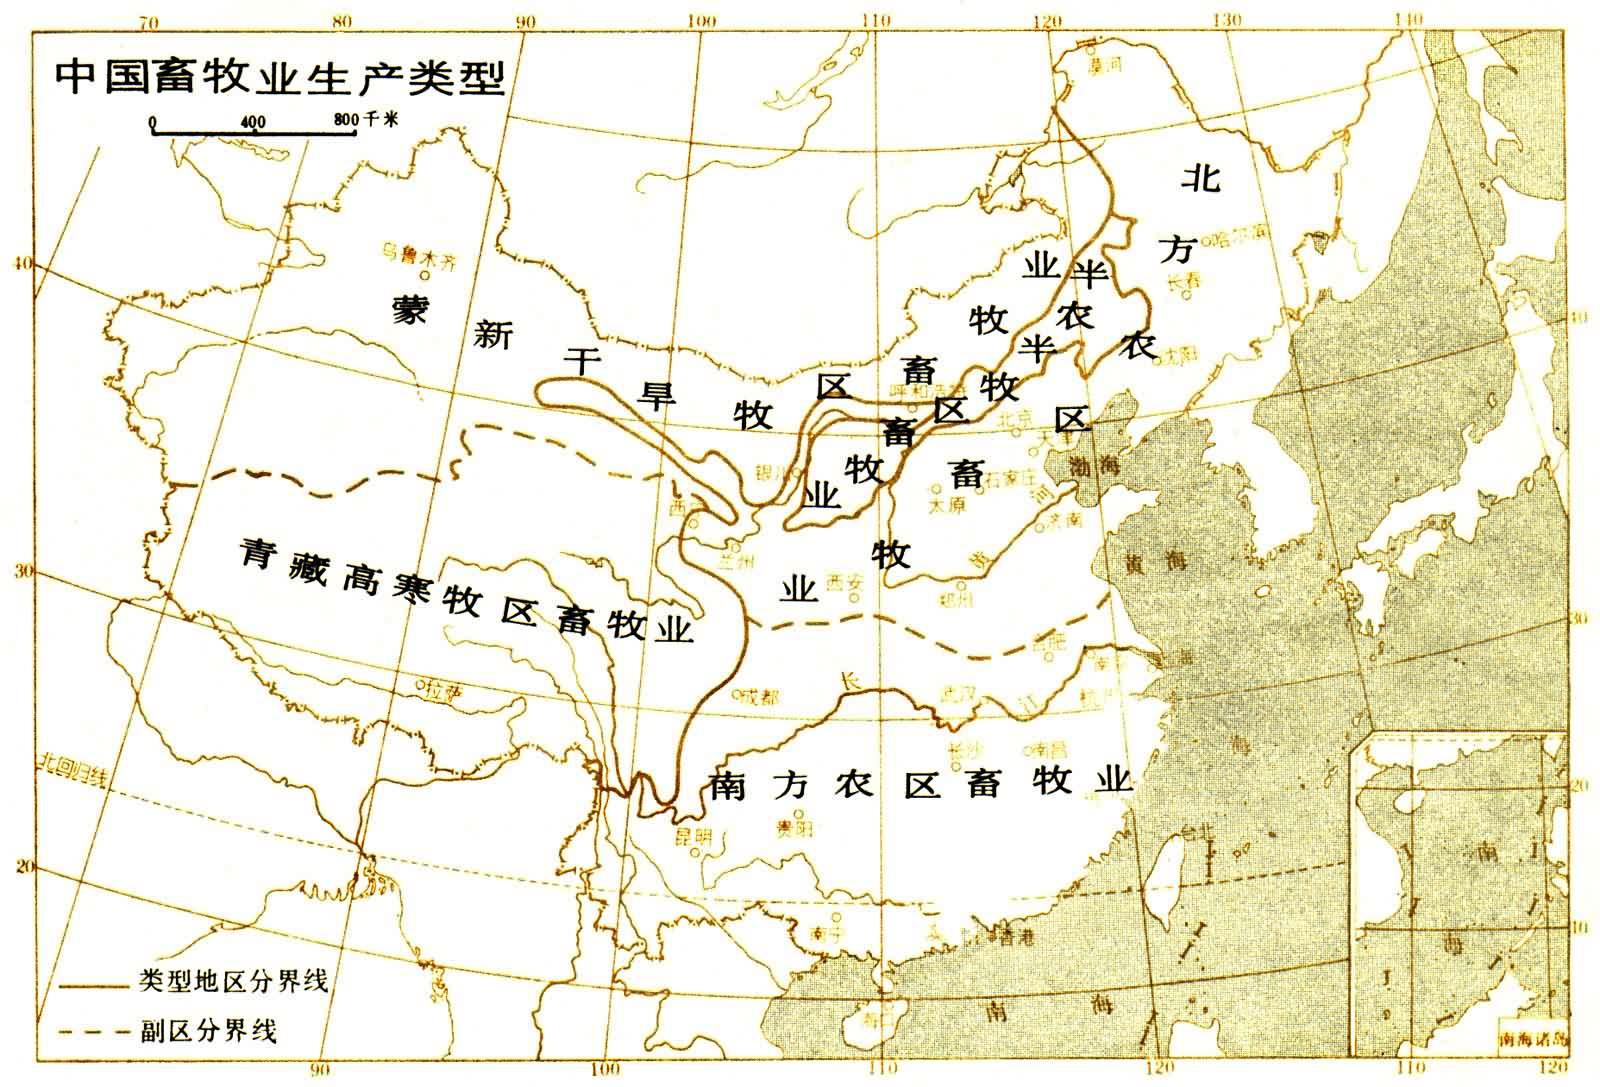 牧区畜牧业 主要分布于北部的内蒙古高原,西部的新疆和西南部的